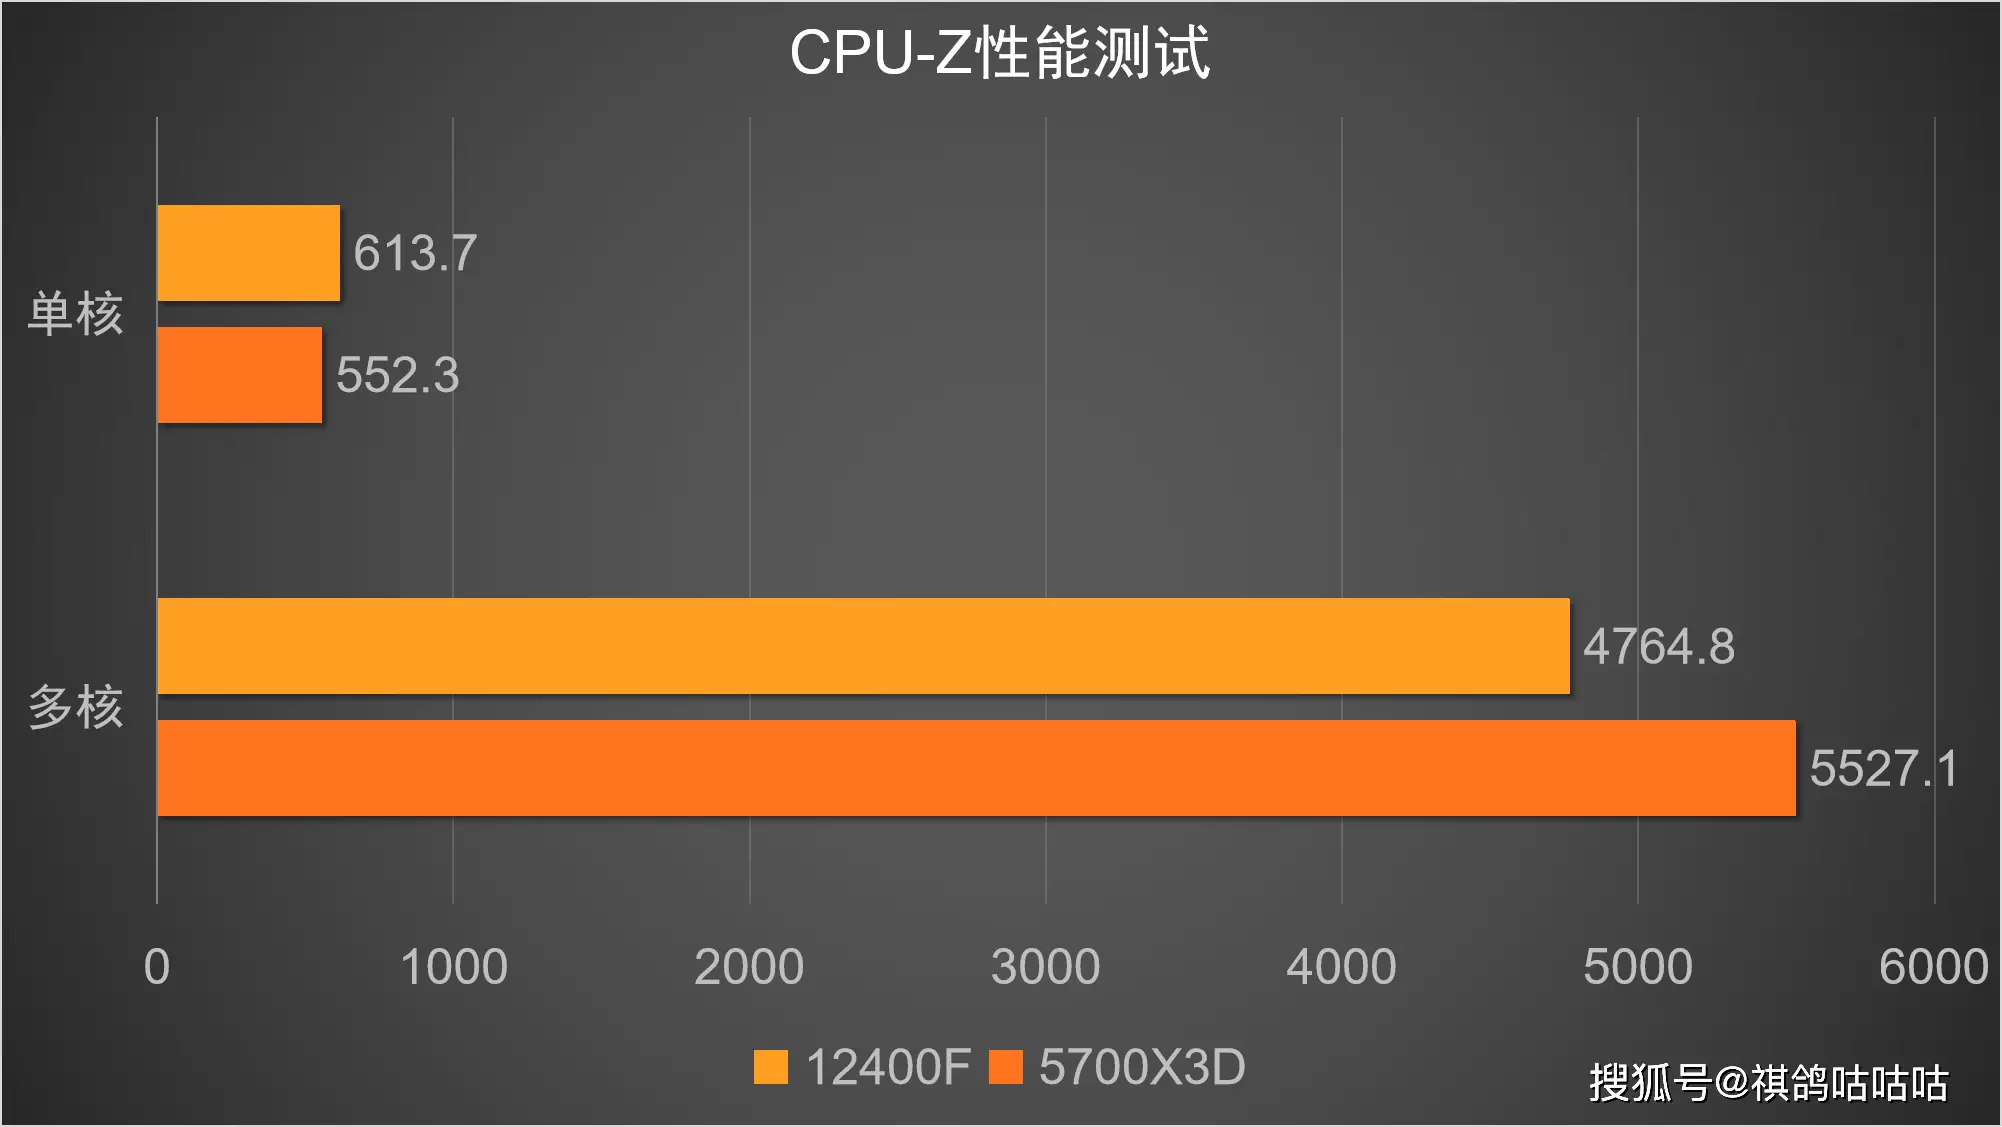 老笔记本升级 DDR4 内存：一场重获新生的技术之旅  第3张